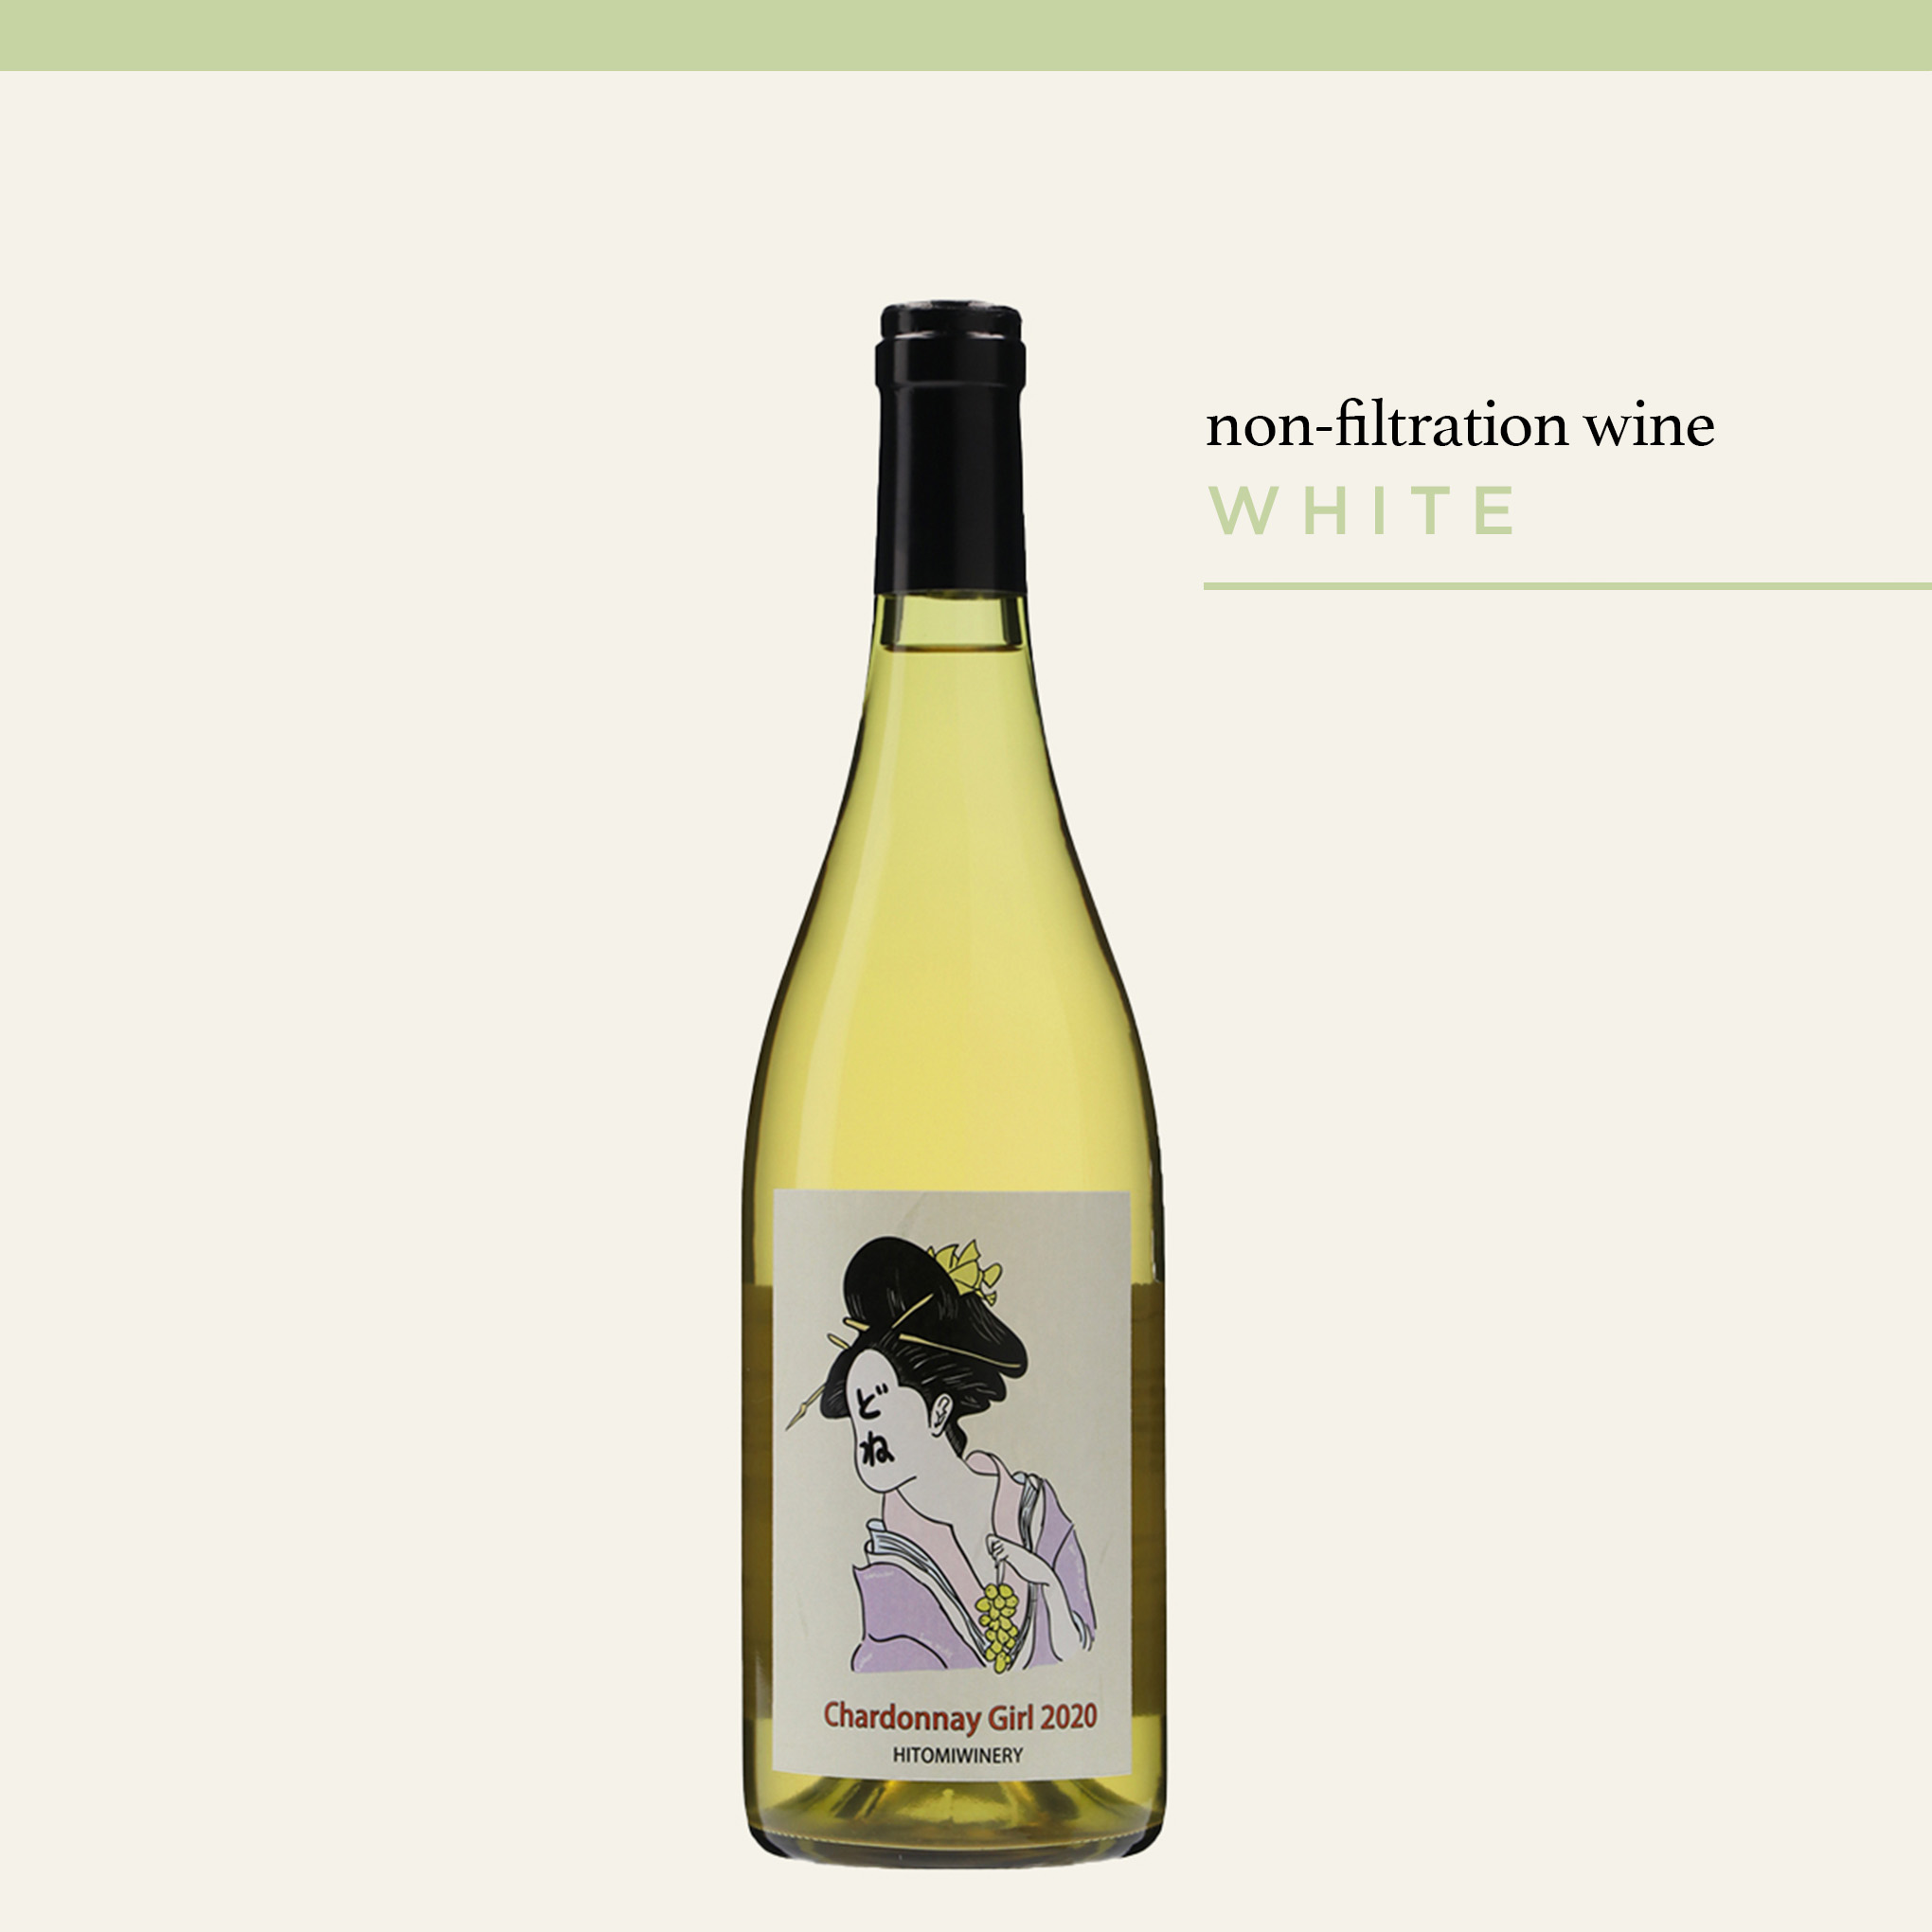 無濾過のにごりワインを造る、こだわりのワイナリーから到着した『Chardonnay Girl 2020 シャルドネ・ガール』。